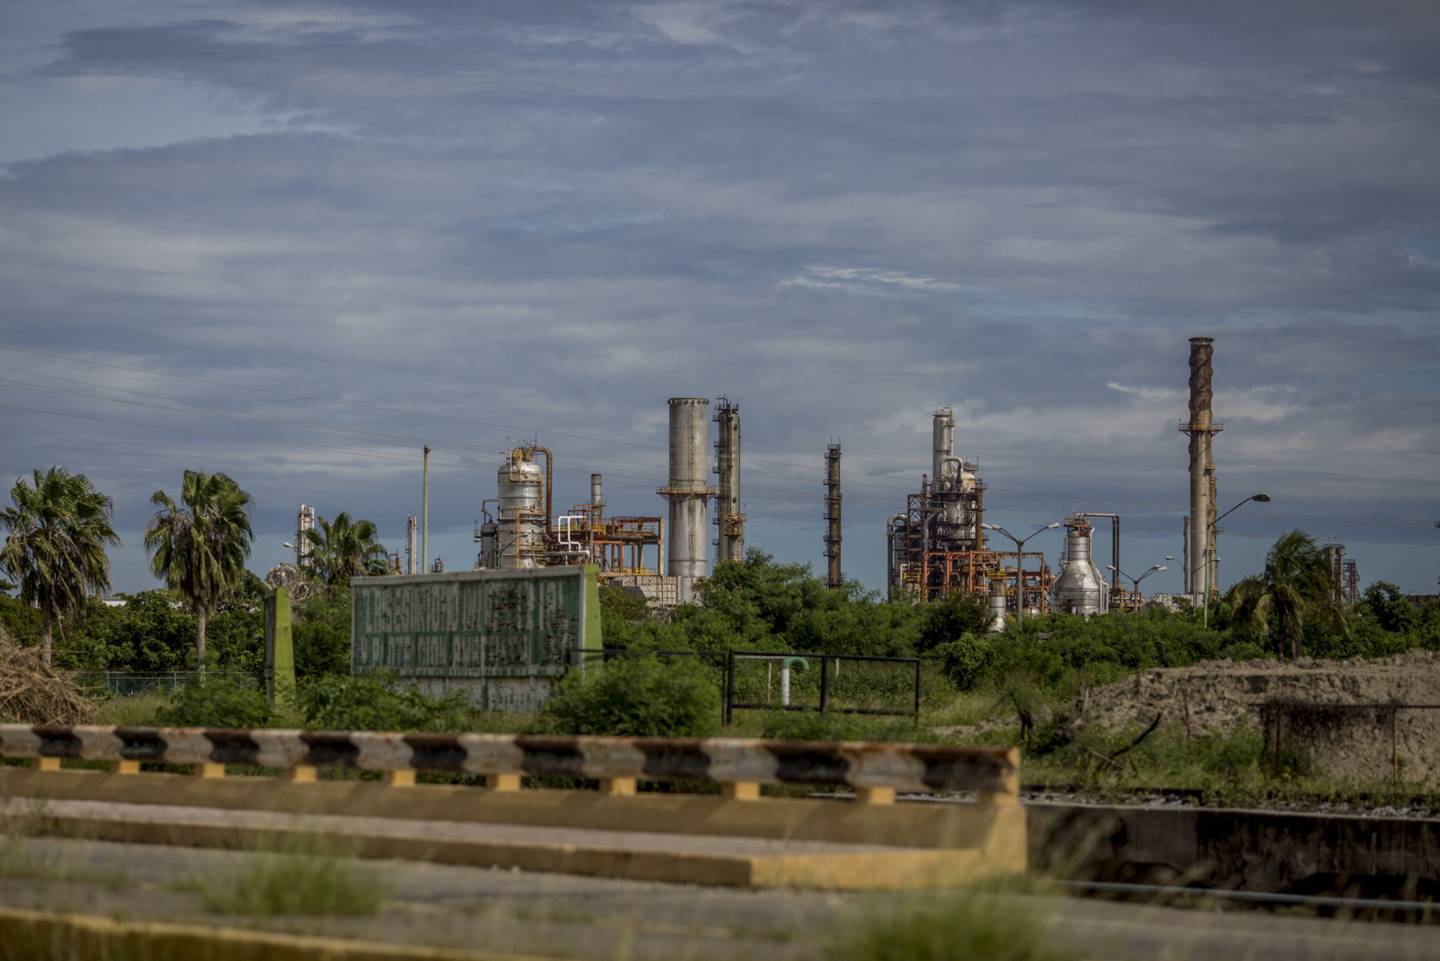 La refinería de Petróleos Mexicanos (Pemex) Salina Cruz refinery ubicada en el estado de Oaxaca.